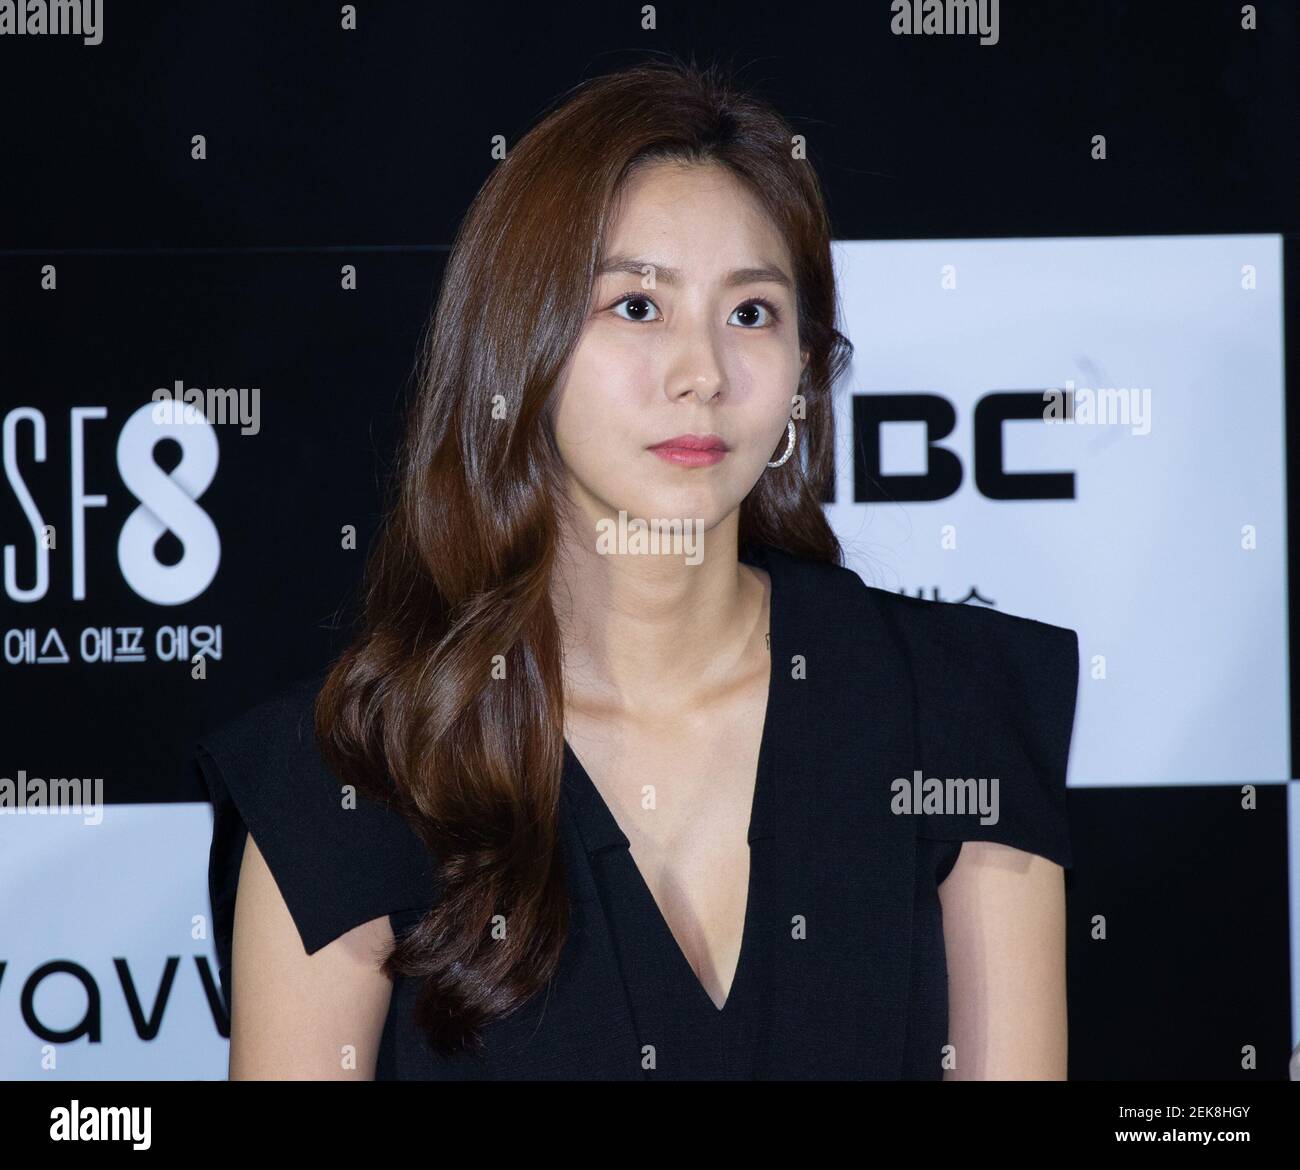 8 de julio de 2020 - Seúl, Corea del Sur : la actriz surcoreana UEE asiste a la rueda de prensa para la película 'F8' en el CGV Cinema de Seúl, Corea del Sur el 8 de julio de 2020. La película estará abierta el 10 de julio a través de la plataforma OTT Wavve. (Foto de Lee Young-ho/Sipa USA) Foto de stock